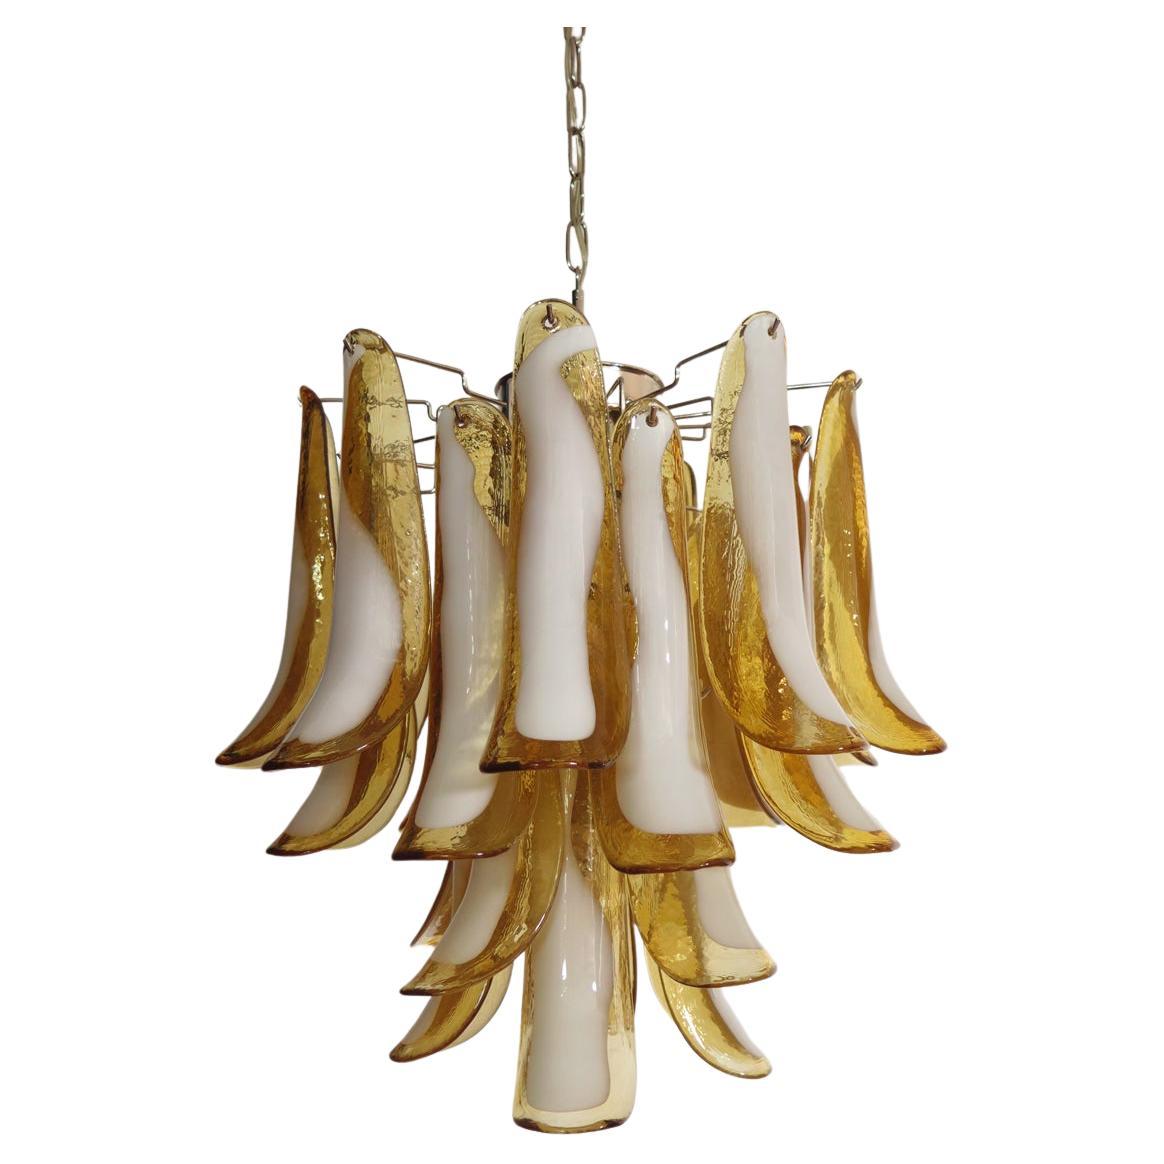 Italian vintage Murano chandelier - 26 amber glass petals